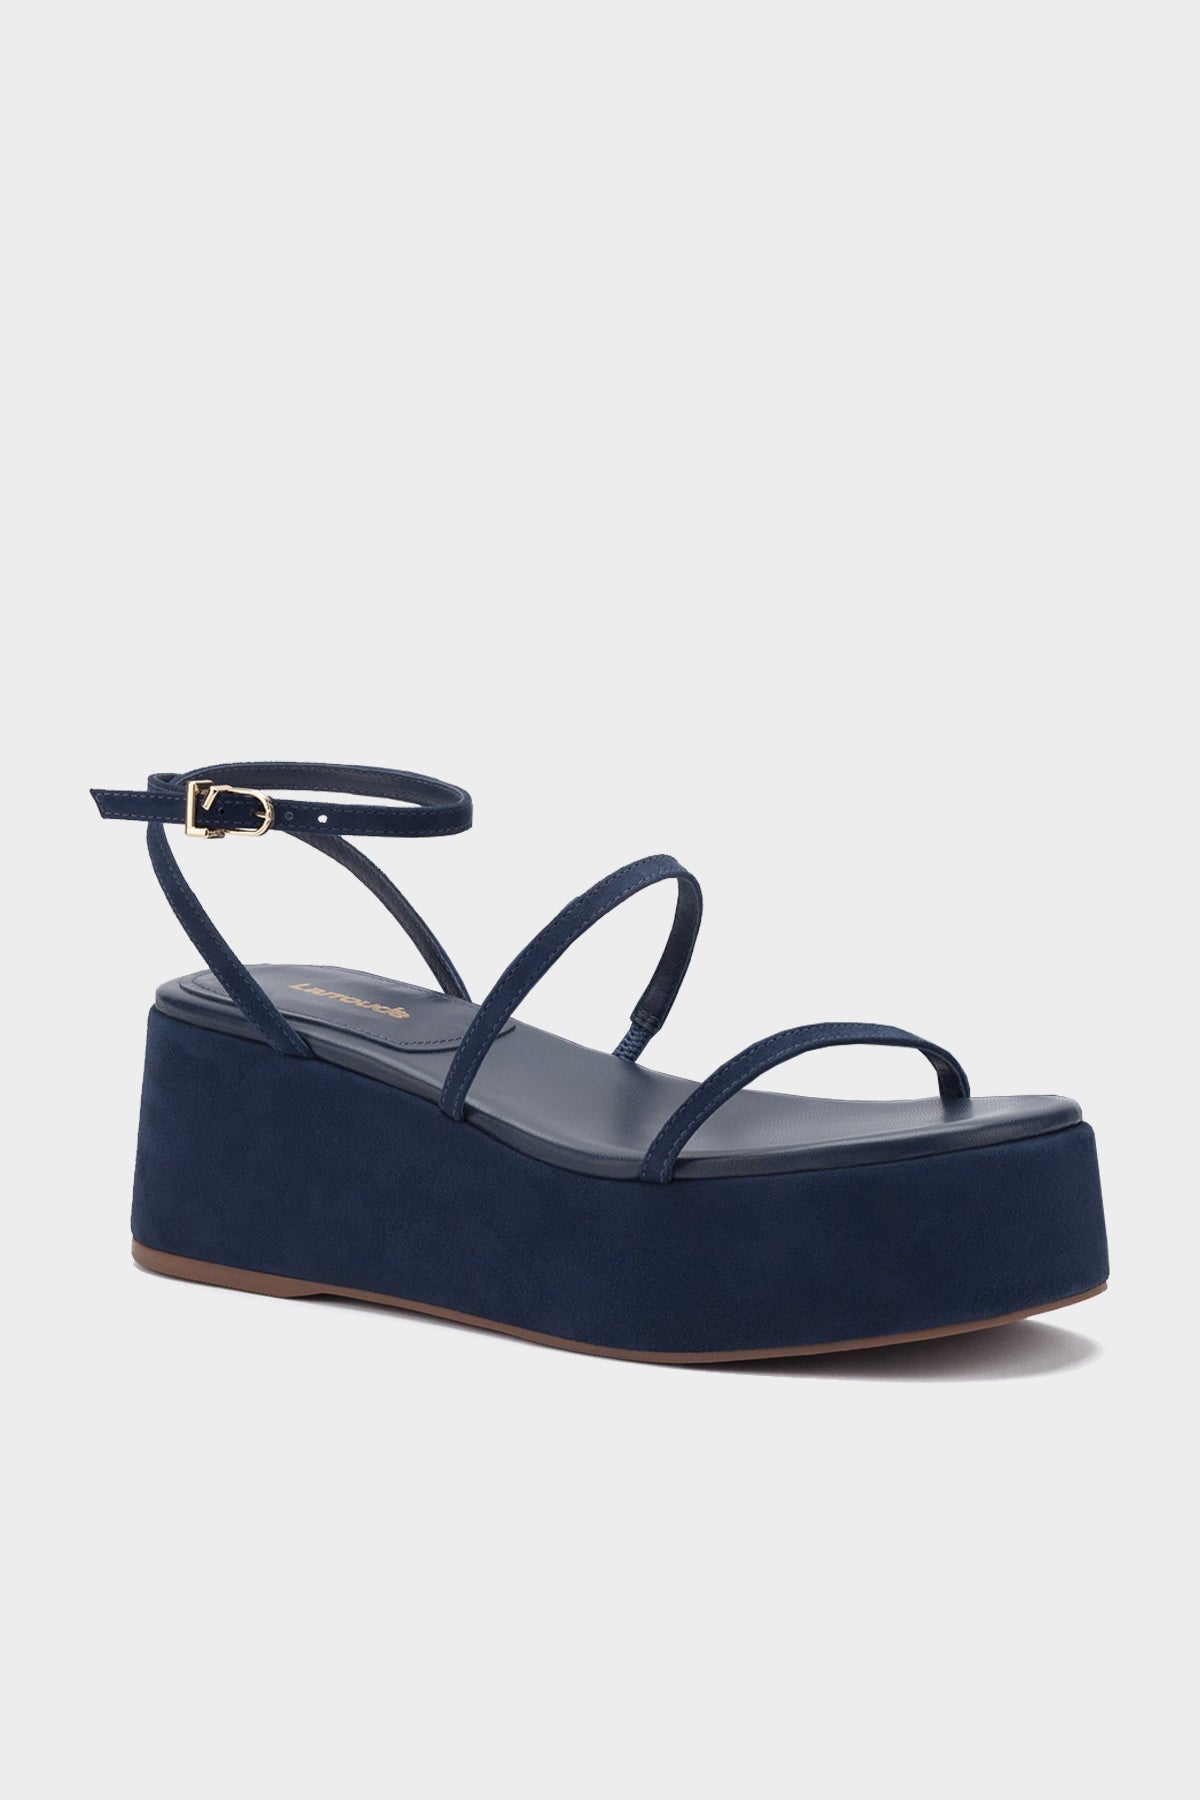 Gio Flatform Sandal in Navy Suede - shop-olivia.com